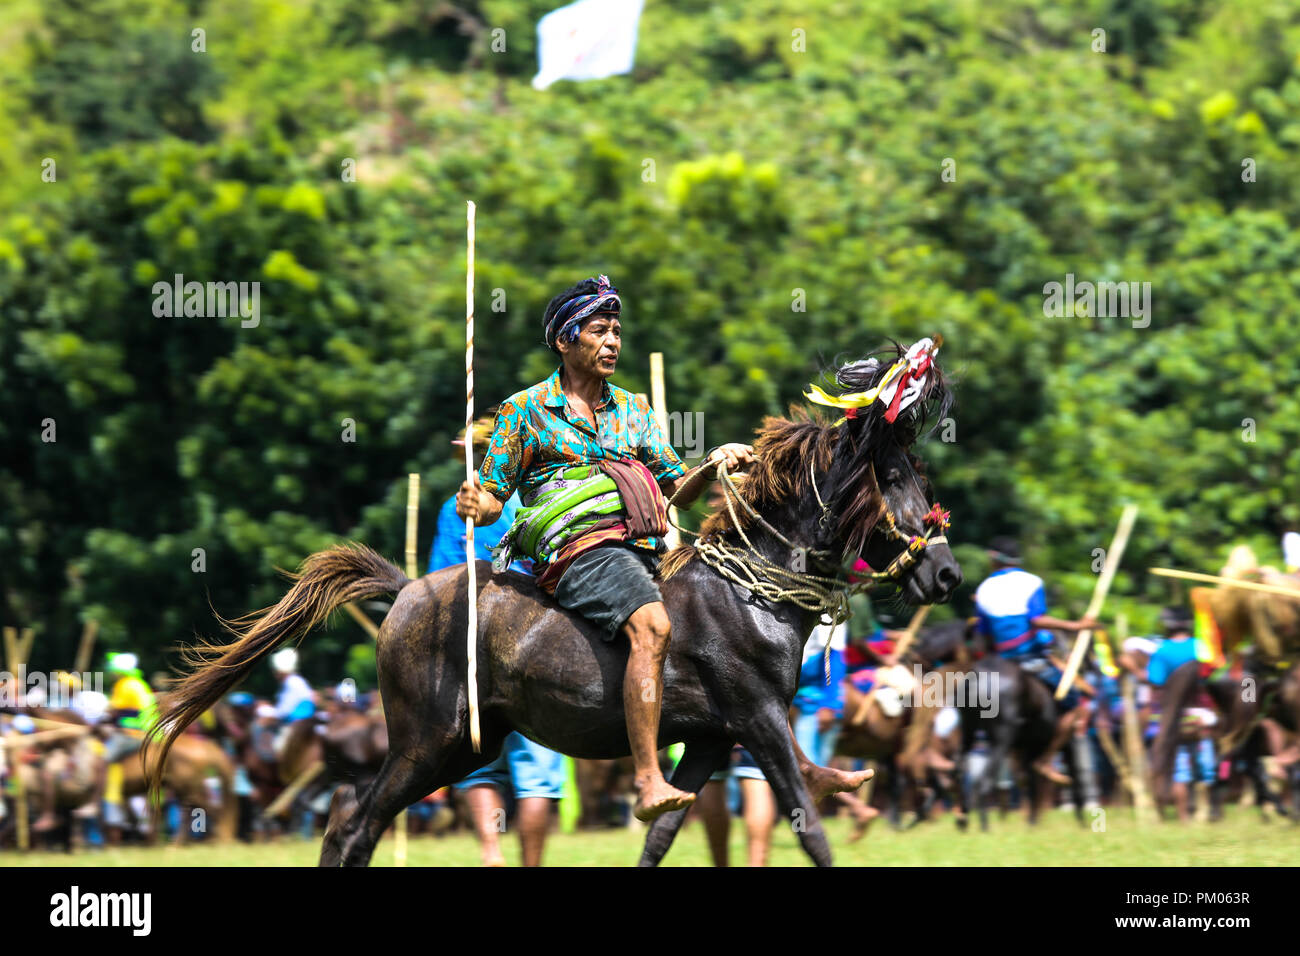 Pasola, indonesiano le cerimonie tradizionali che coinvolgono i giovani cavalieri a cavallo Foto Stock